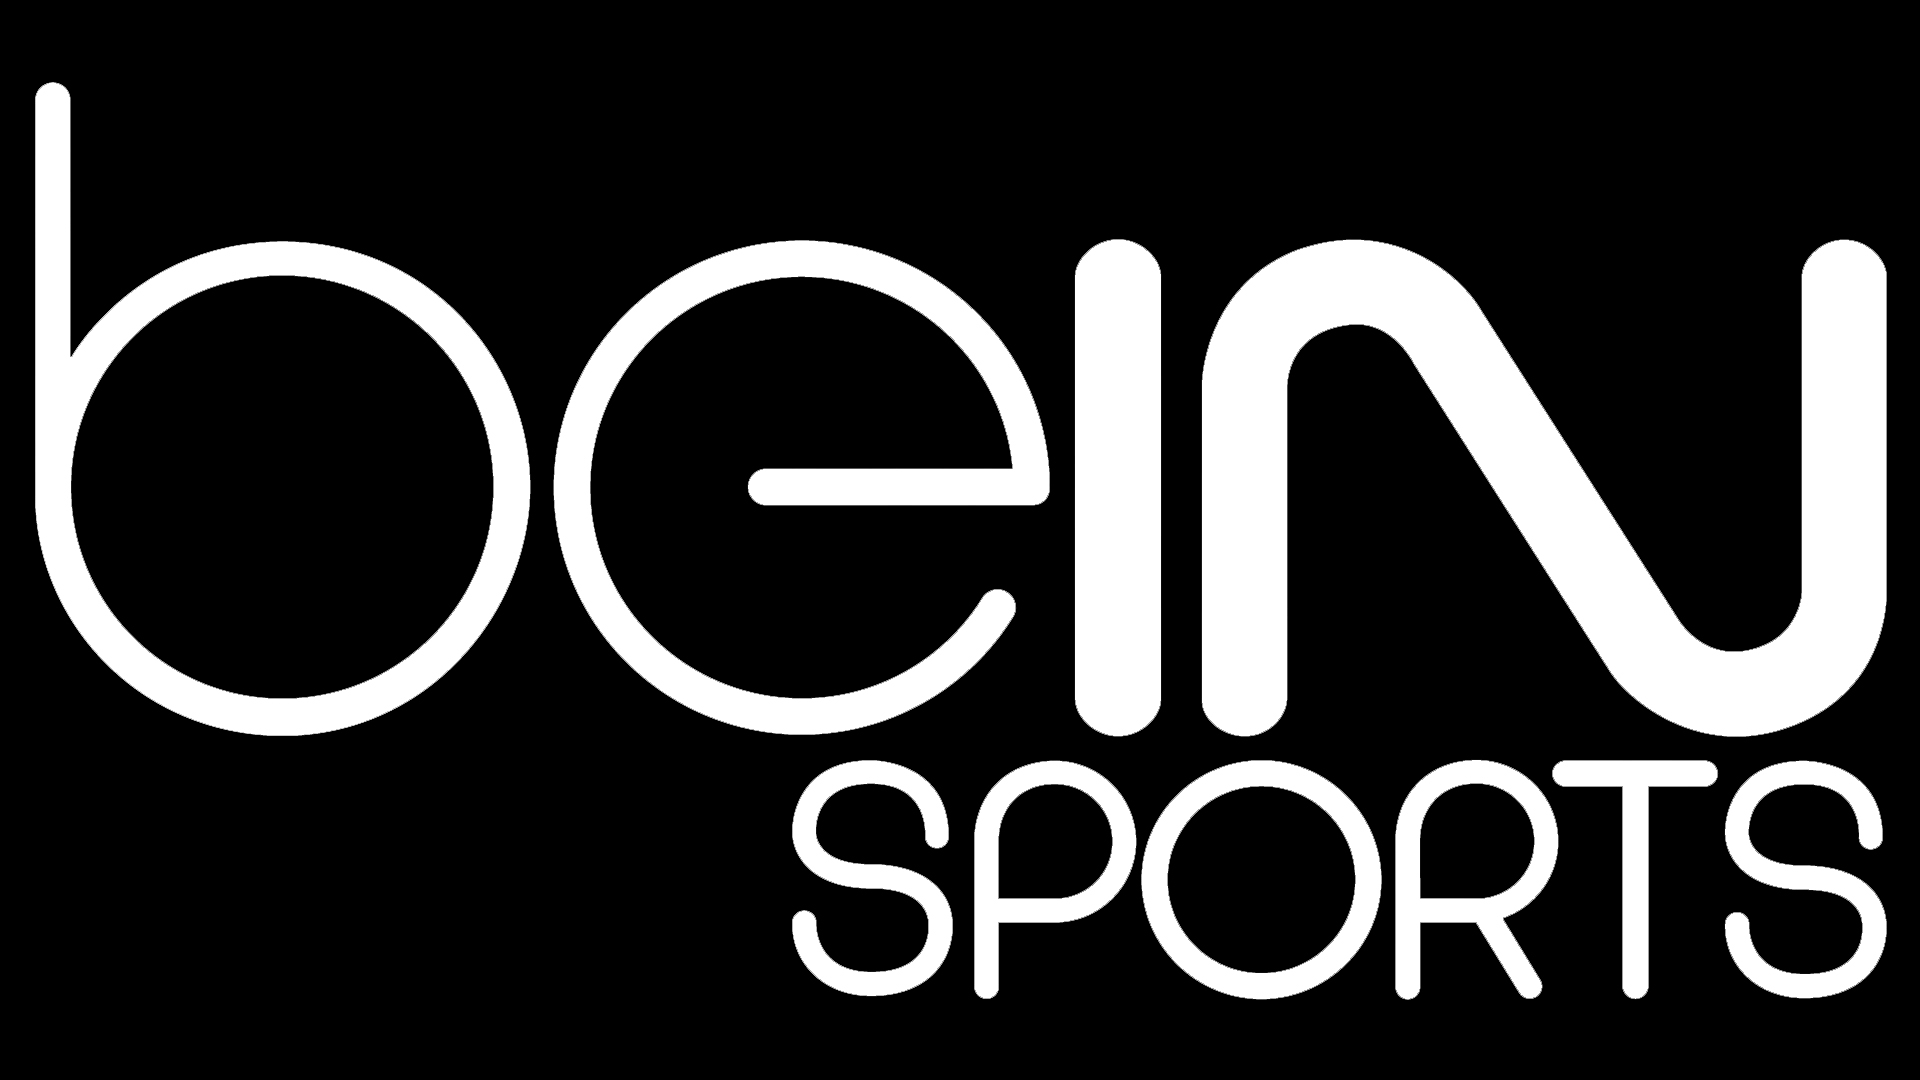 Bein sports 3 sport. Bein лого. Лого Беин Спортс. Bein Sport logo. Bein Sports TV логотип.